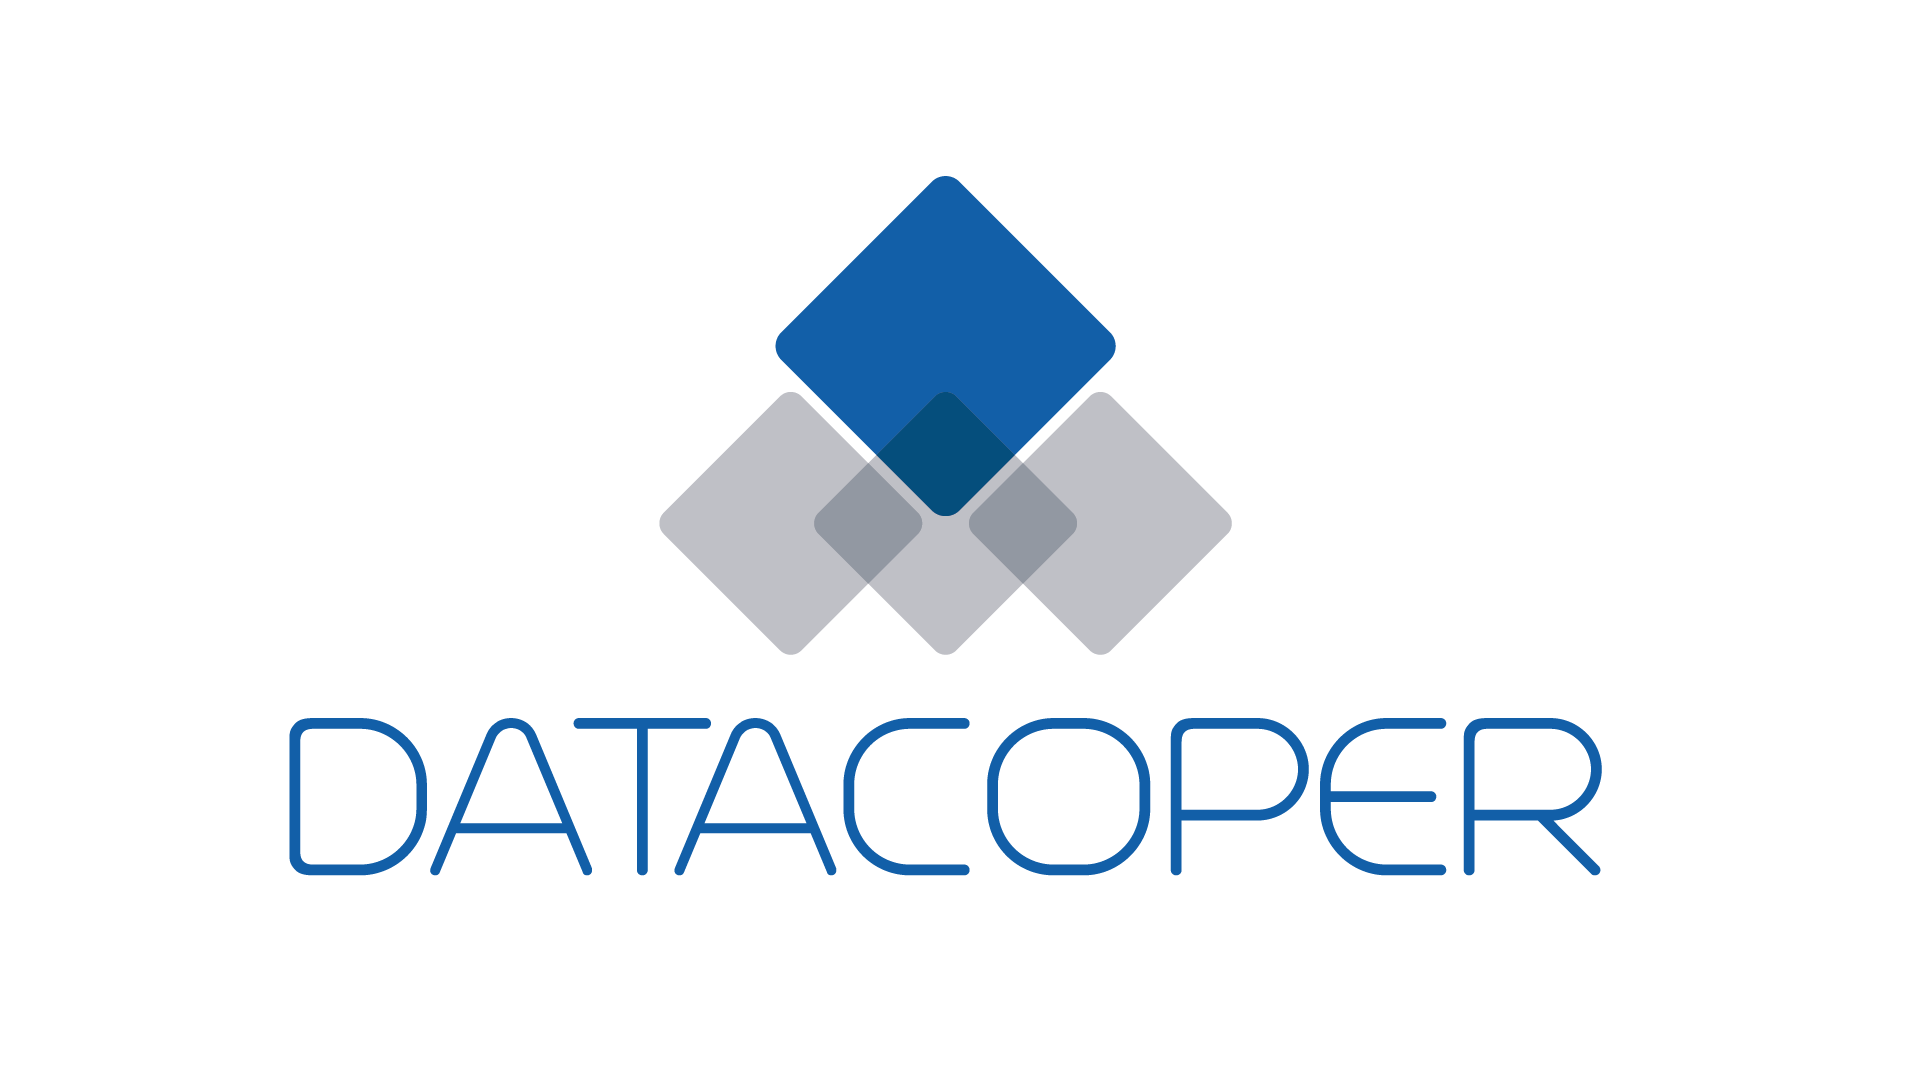 Datacoper apresenta modelo inovador de gestão de clientes